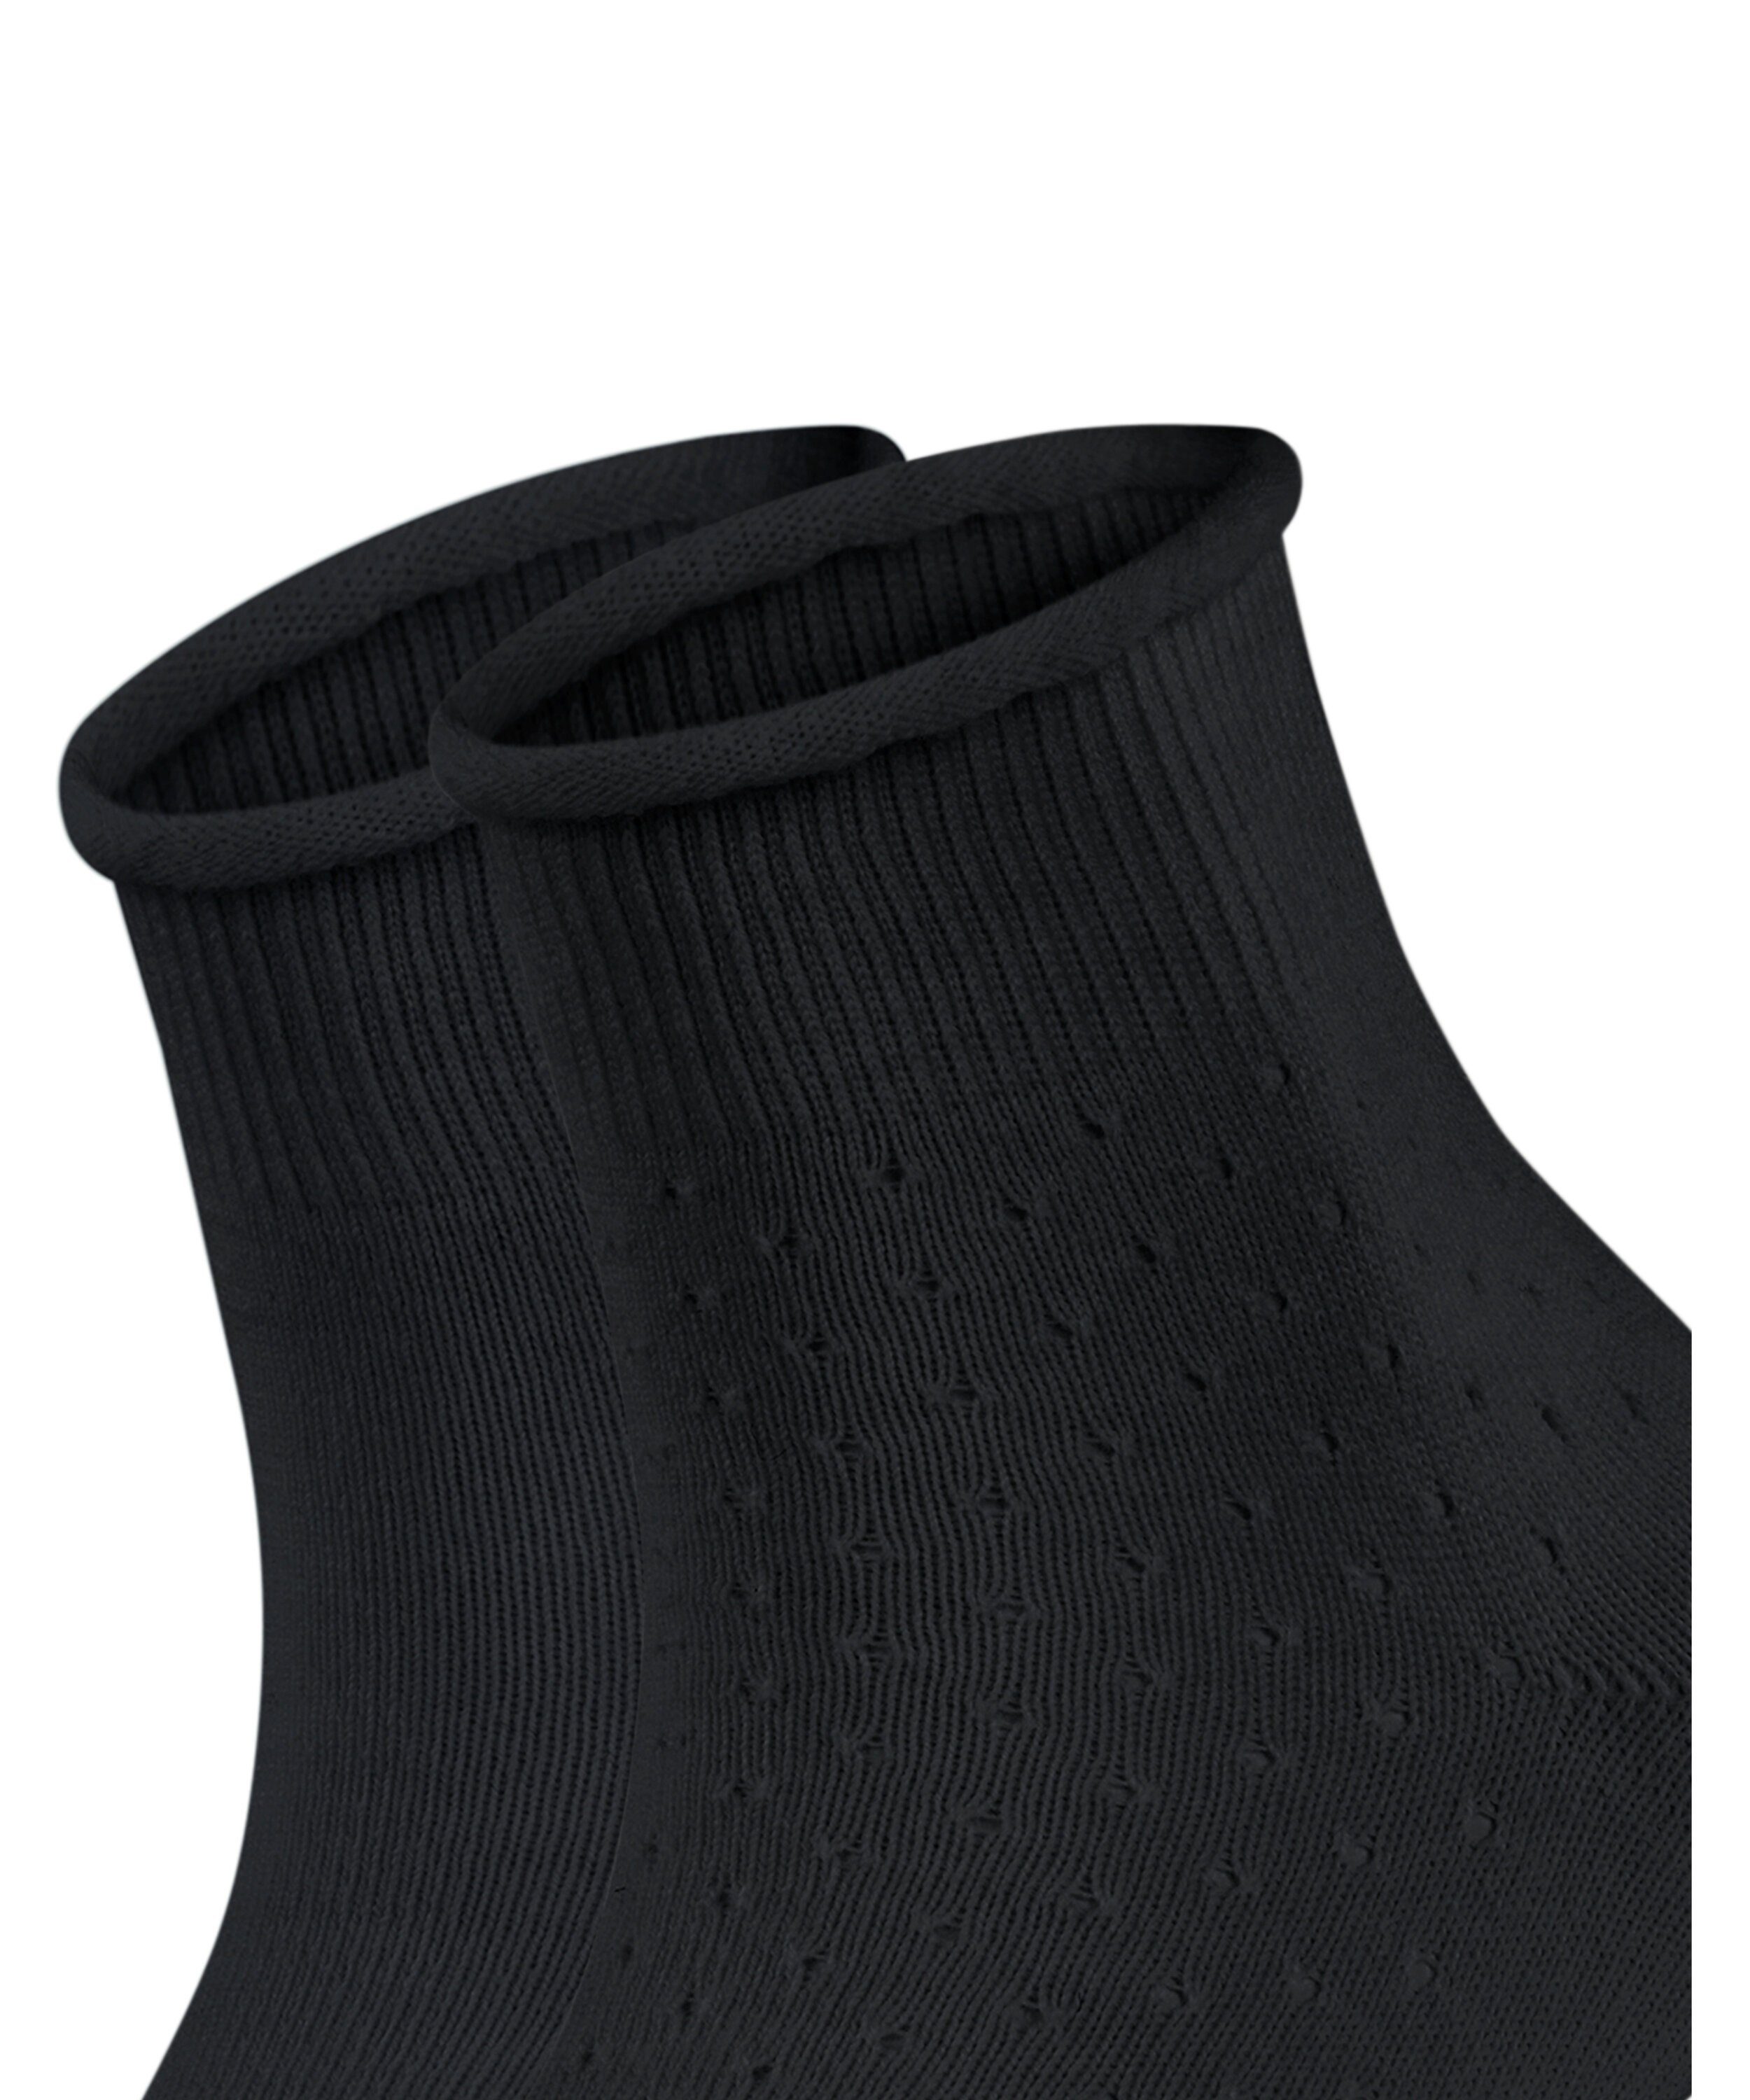 Socken (2-Paar) Cozy 2-Pack Dot black Esprit (3000)